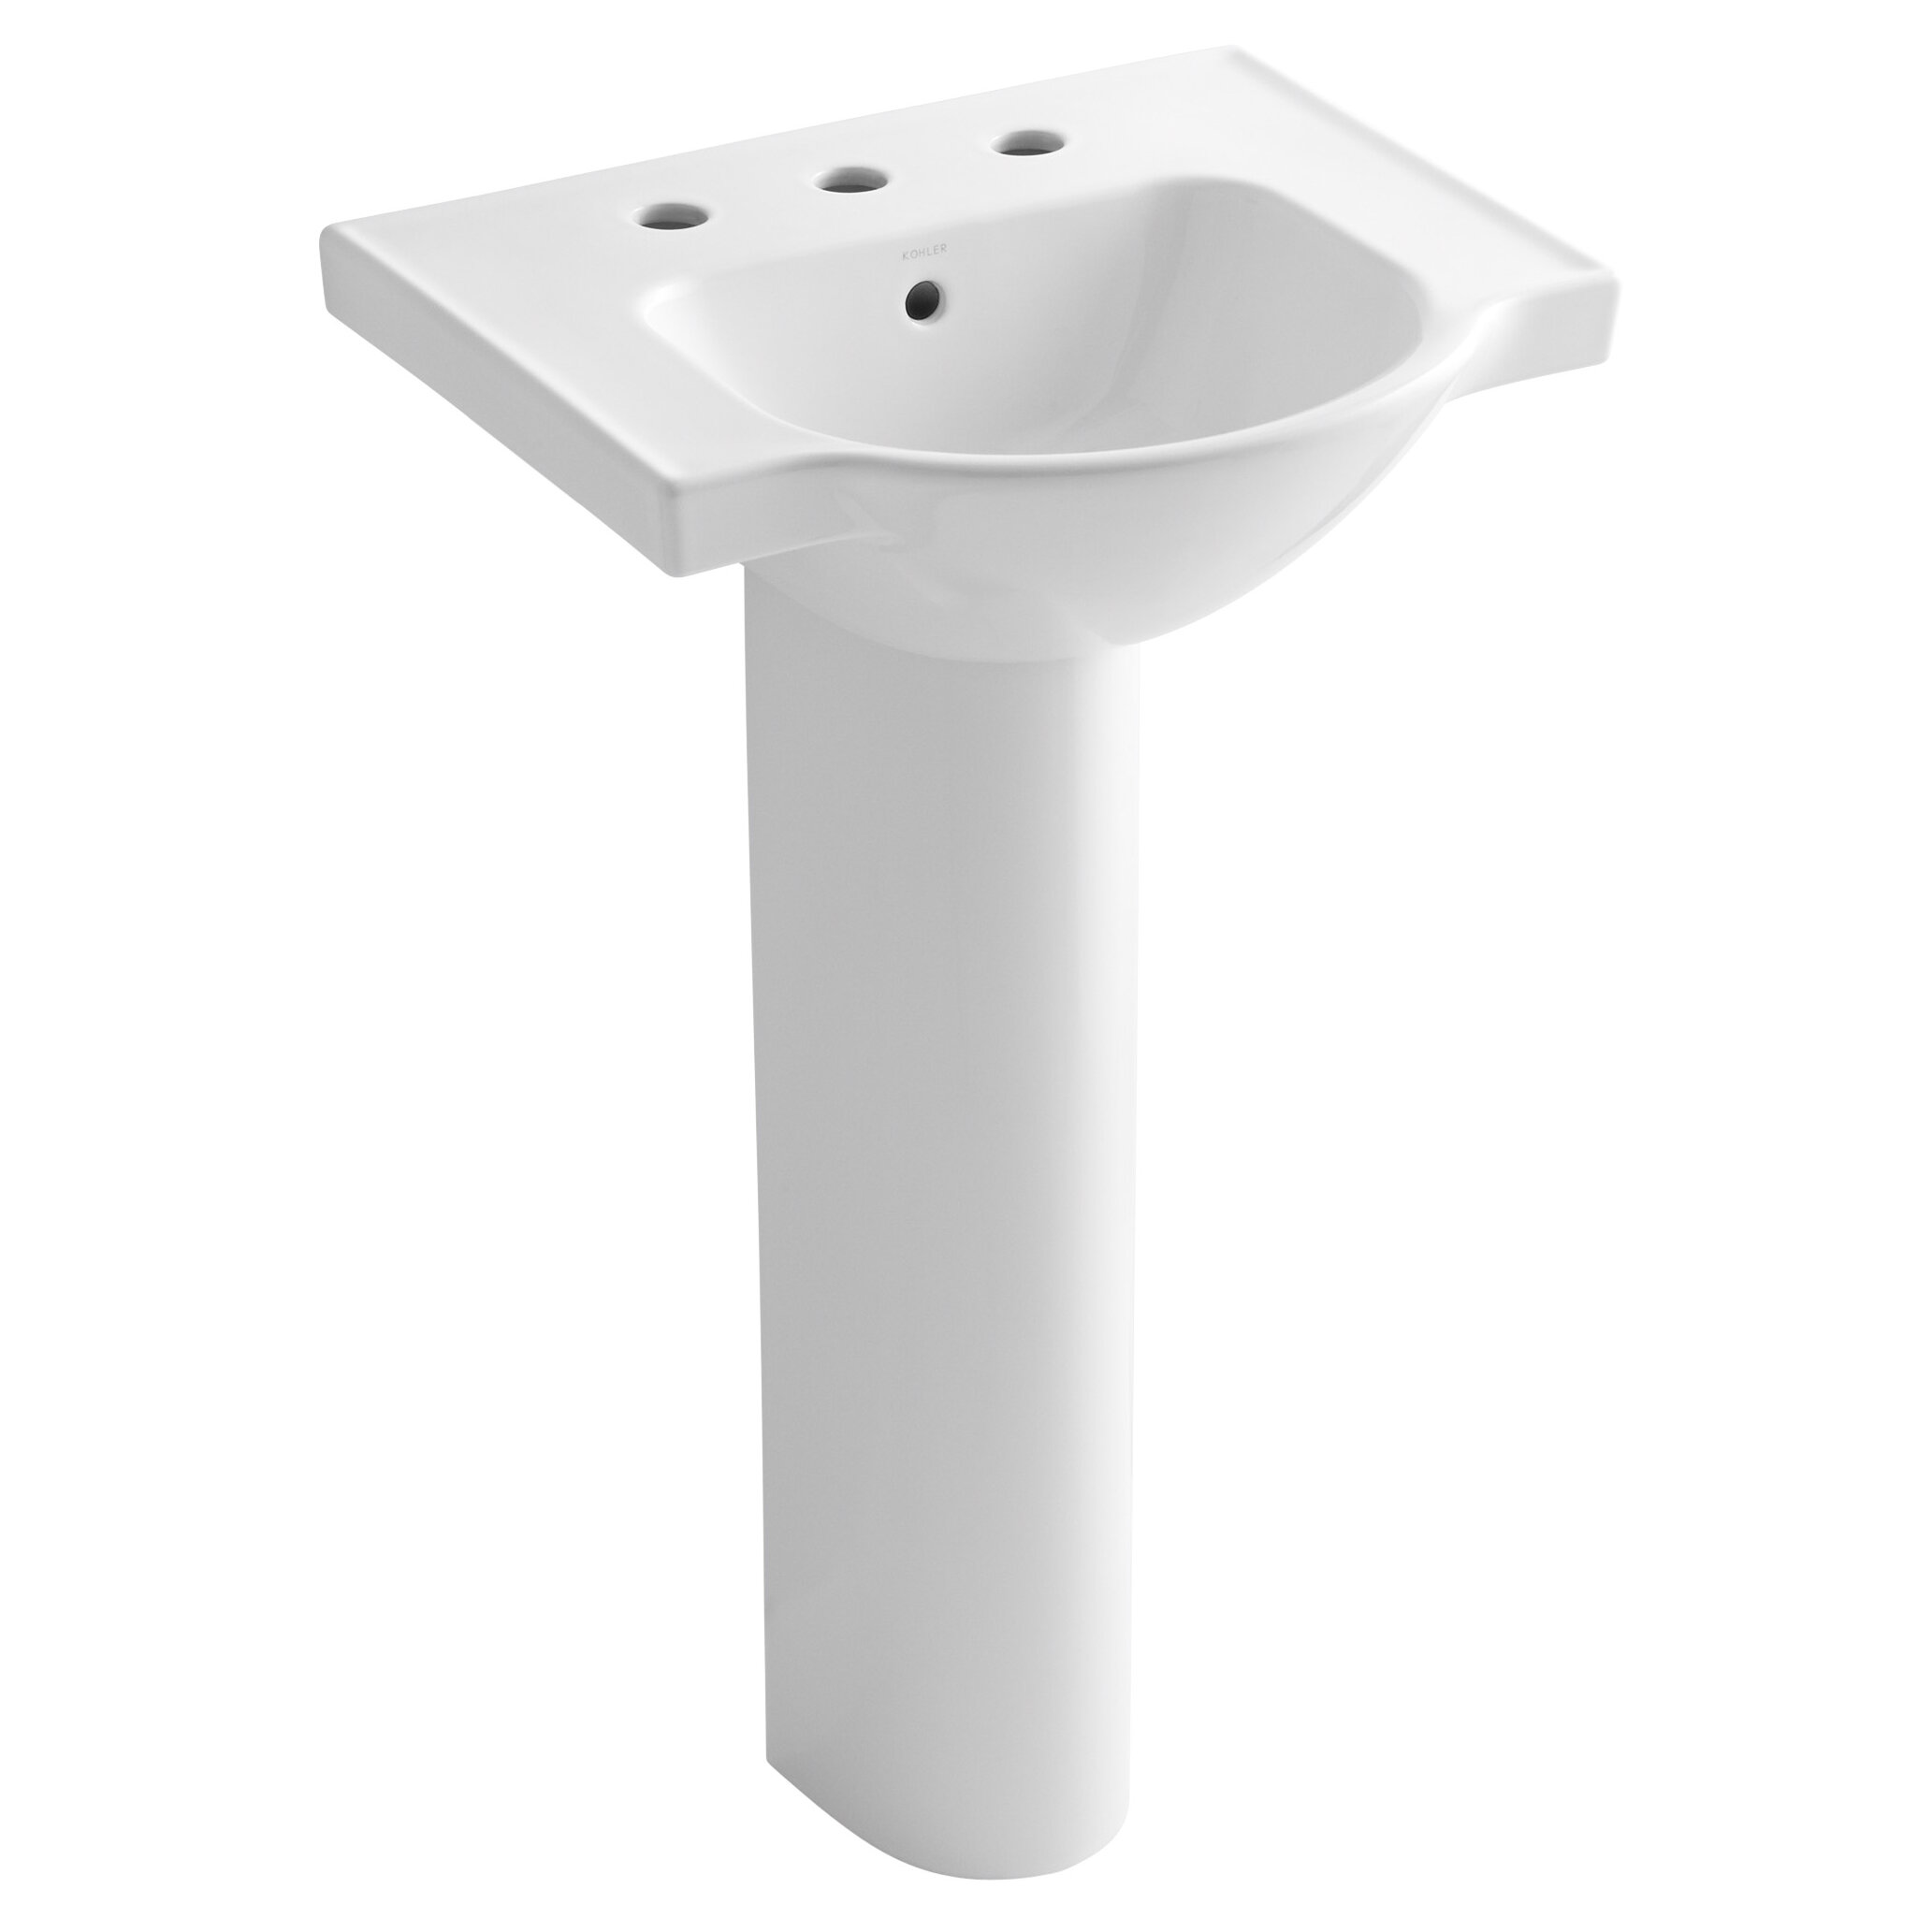 Veer Ceramic 24 Pedestal Bathroom Sink With Overflow